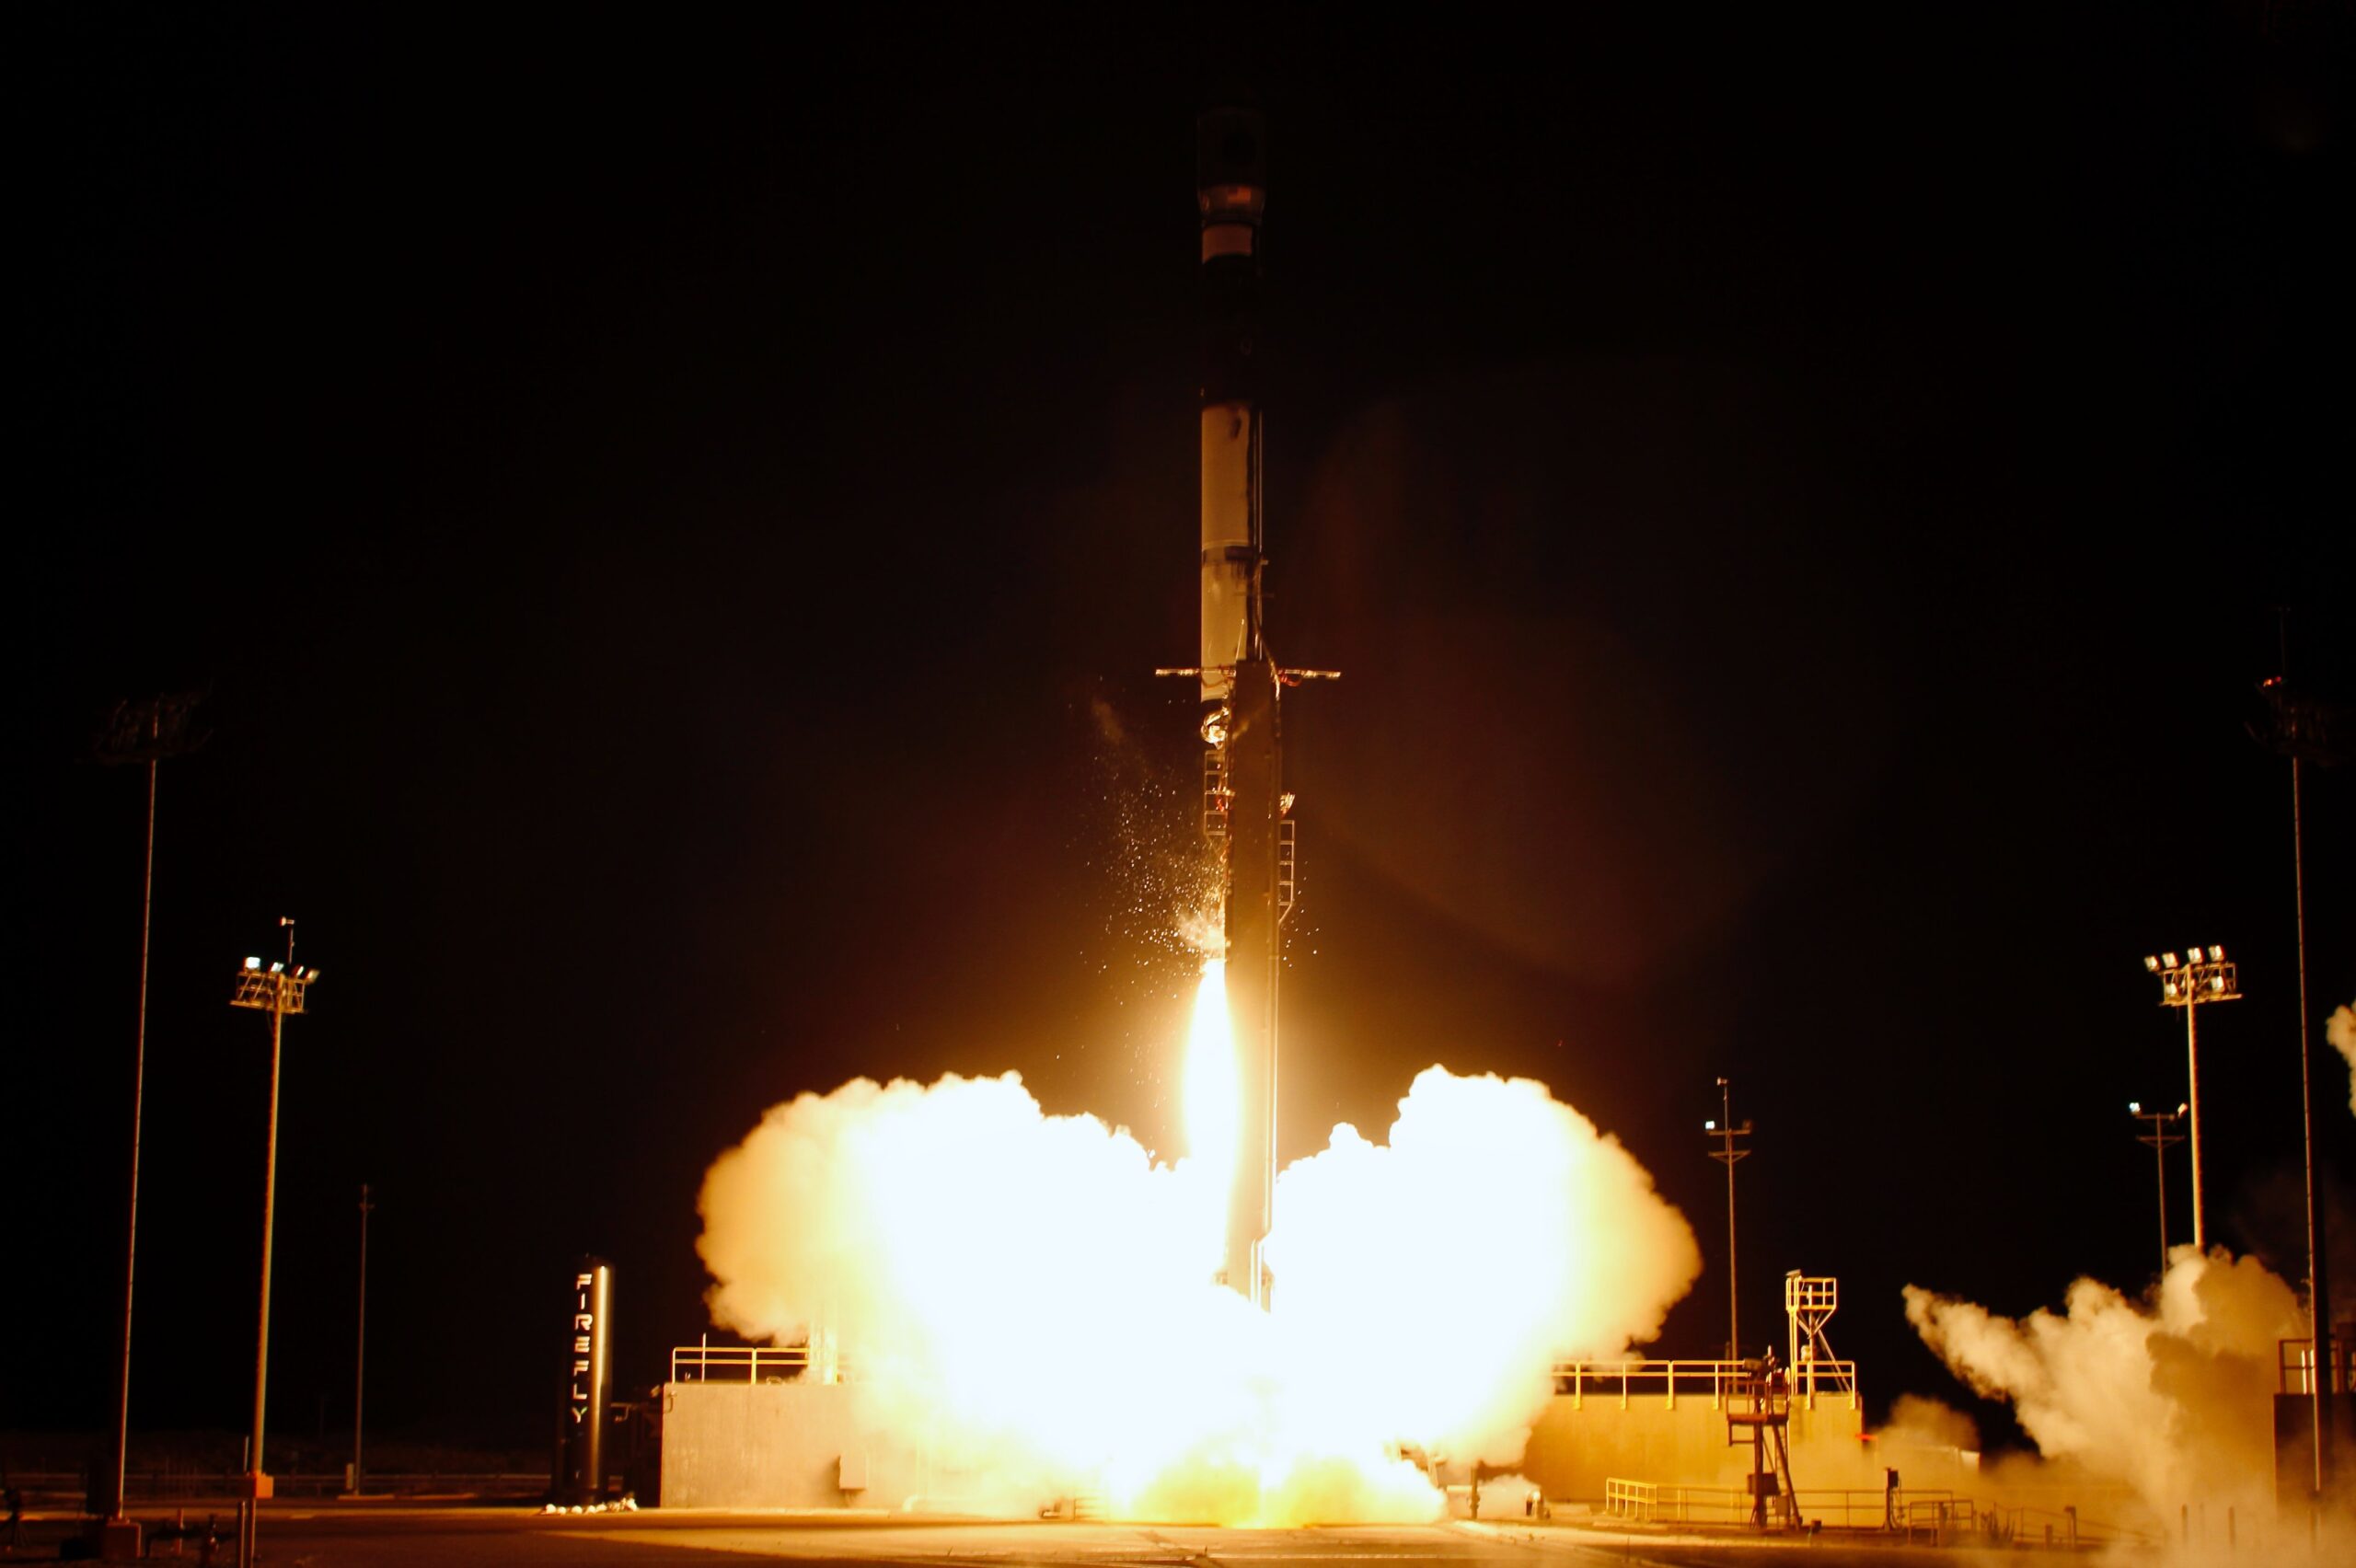 Firefly continuerà le operazioni di lancio reattive per le future missioni Alpha